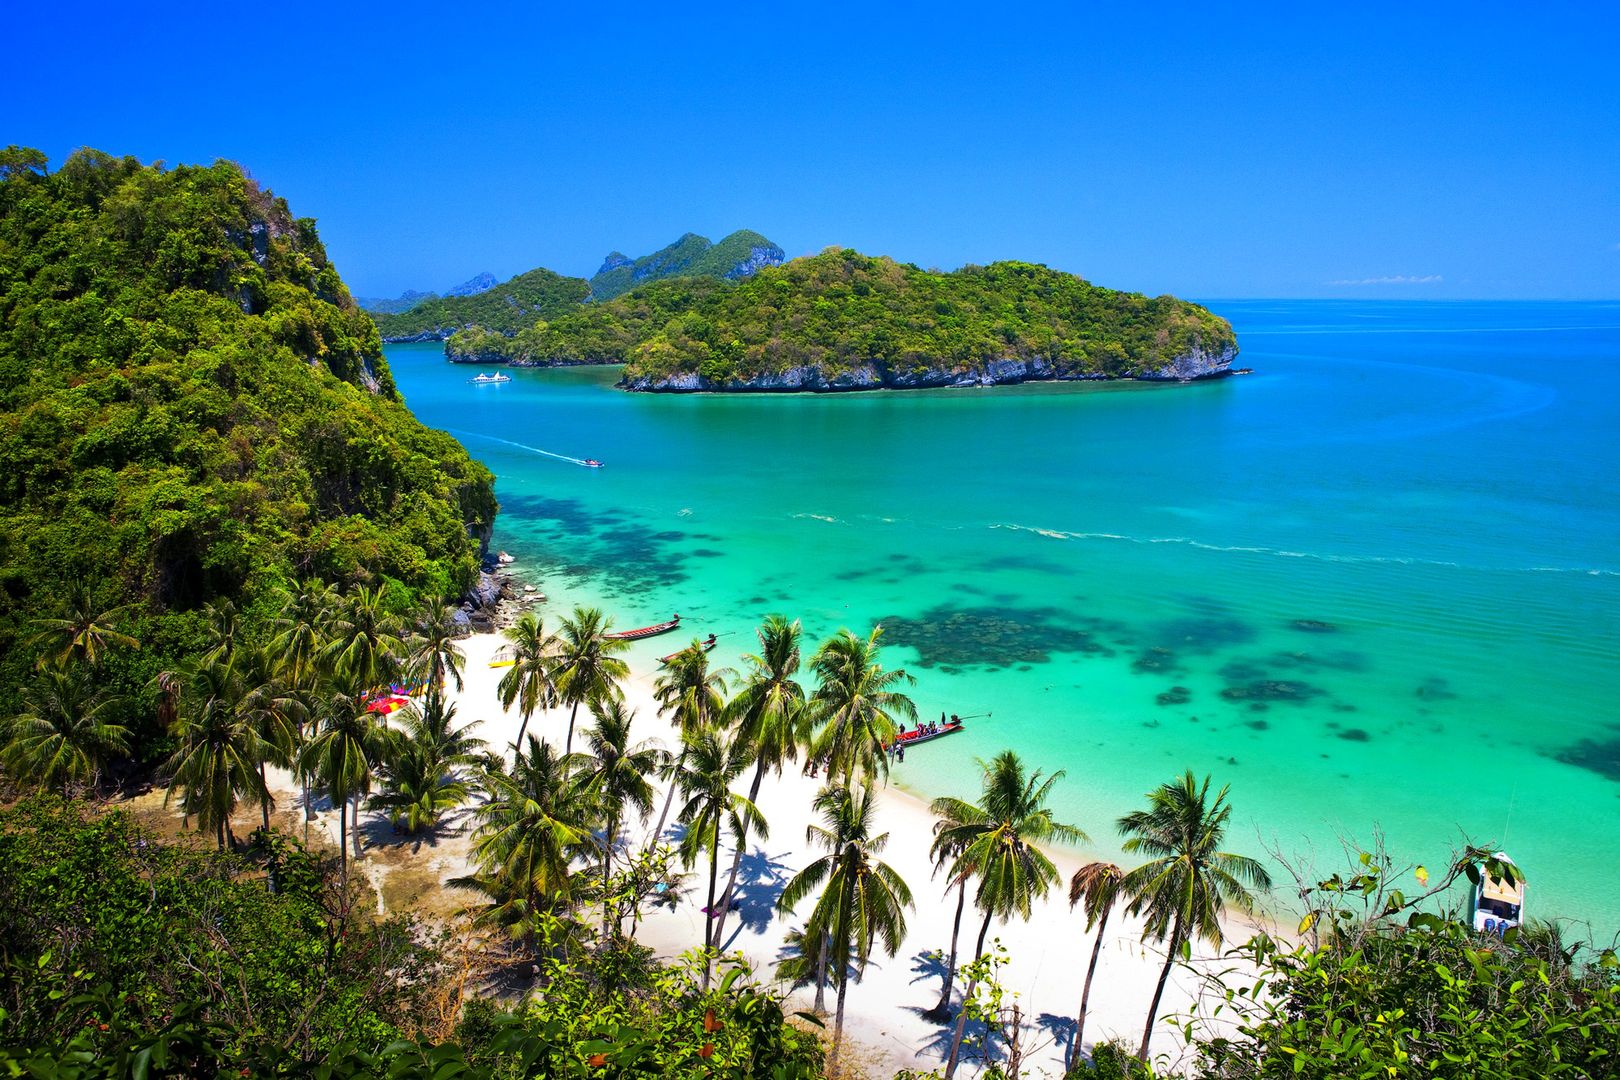 tajlandia-wyspa-podpowiadamy-kt-ra-jest-najpopularniejsza-wp-turystyka